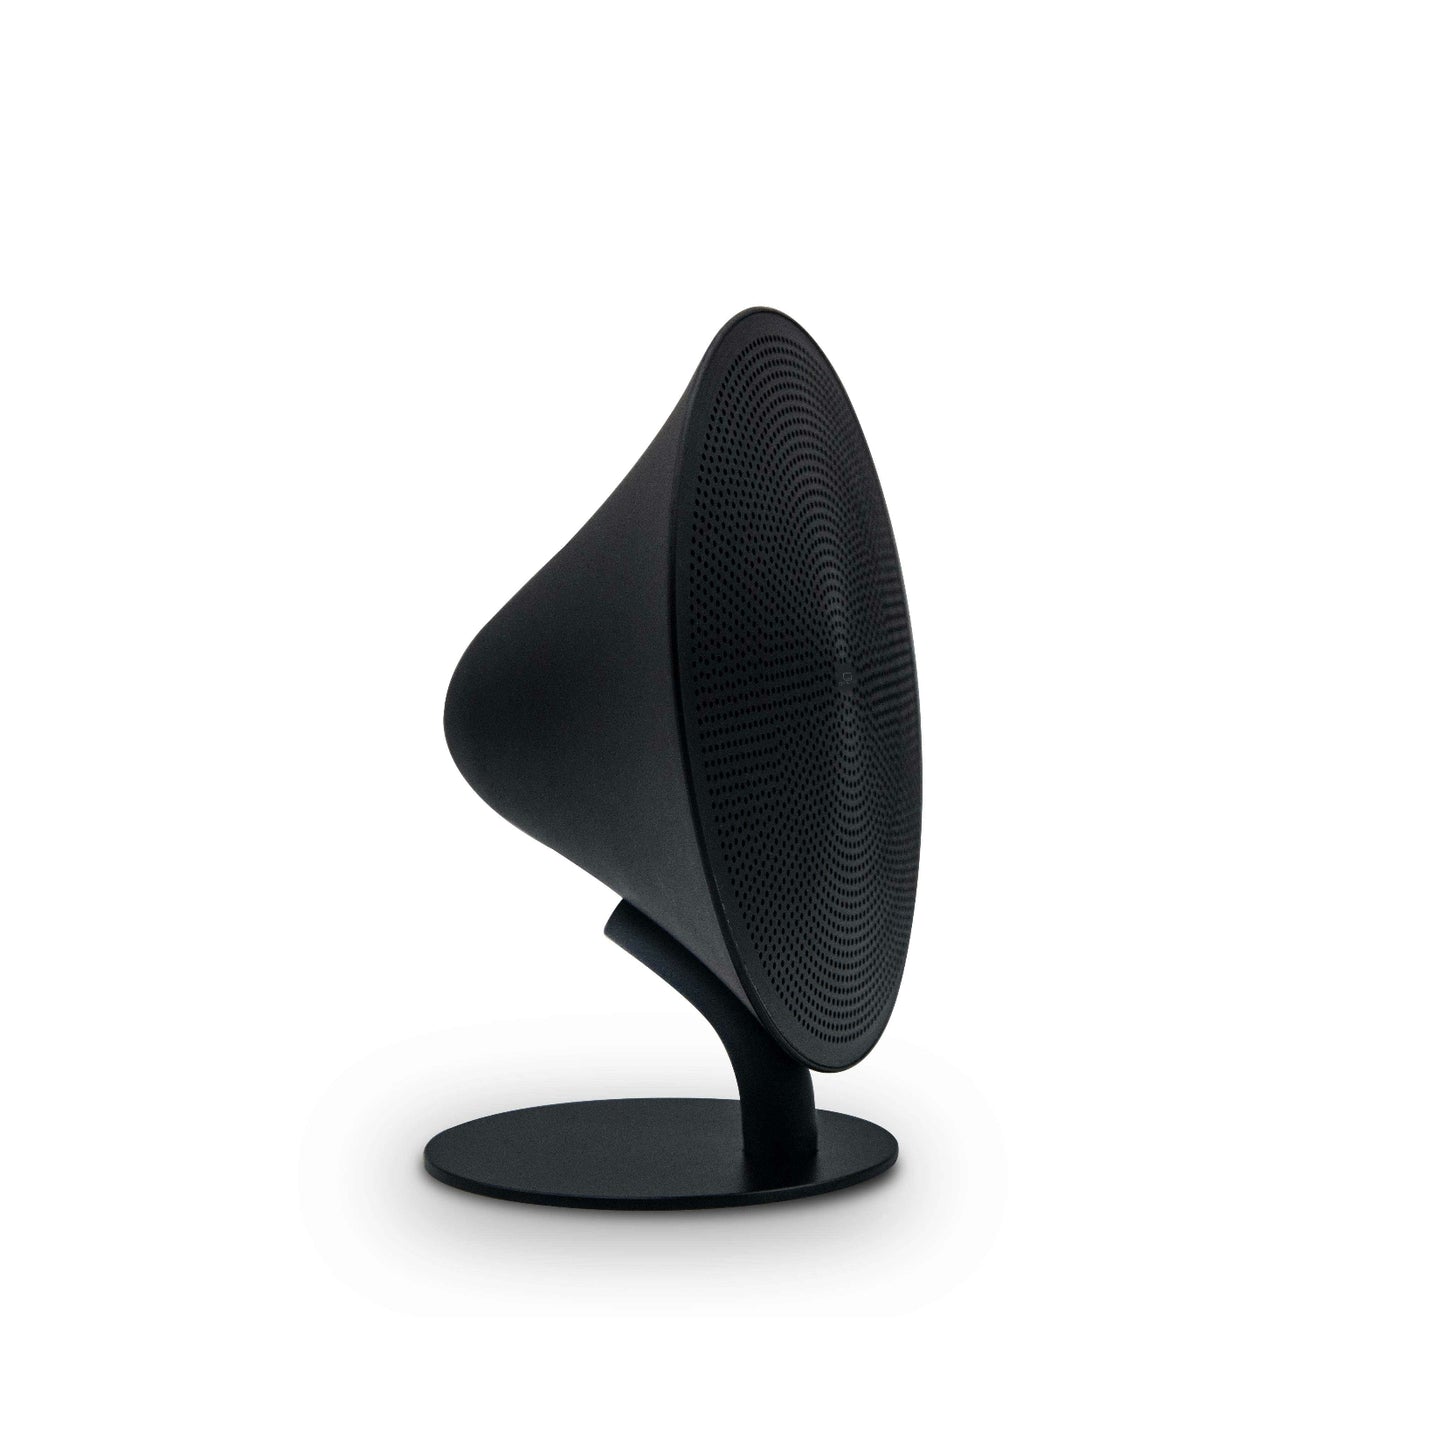 gingko mini one speaker in black